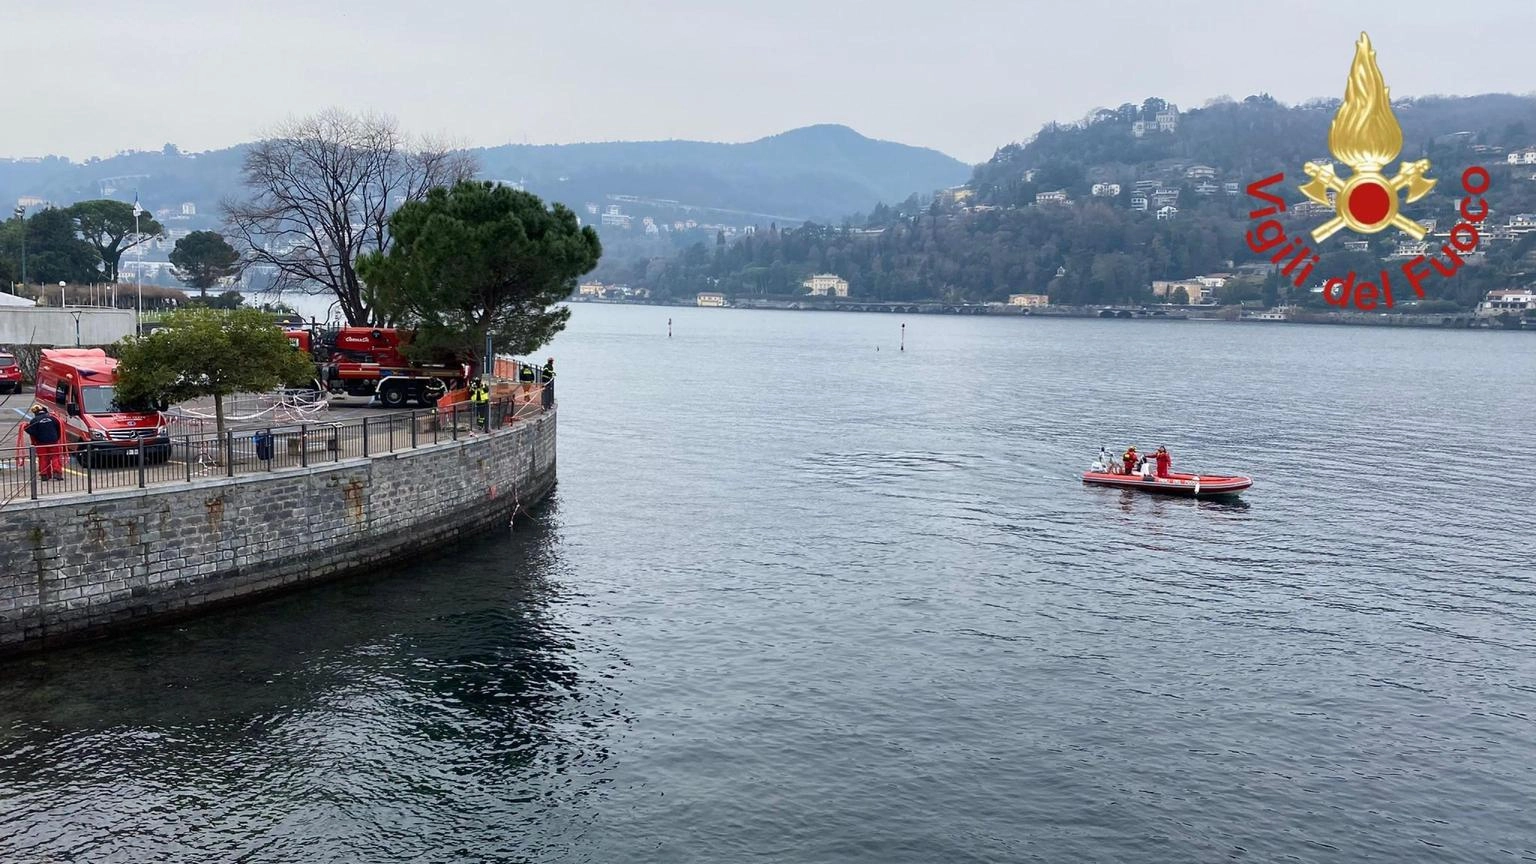 Turista inglese di 22 anni annega nel lago di Como